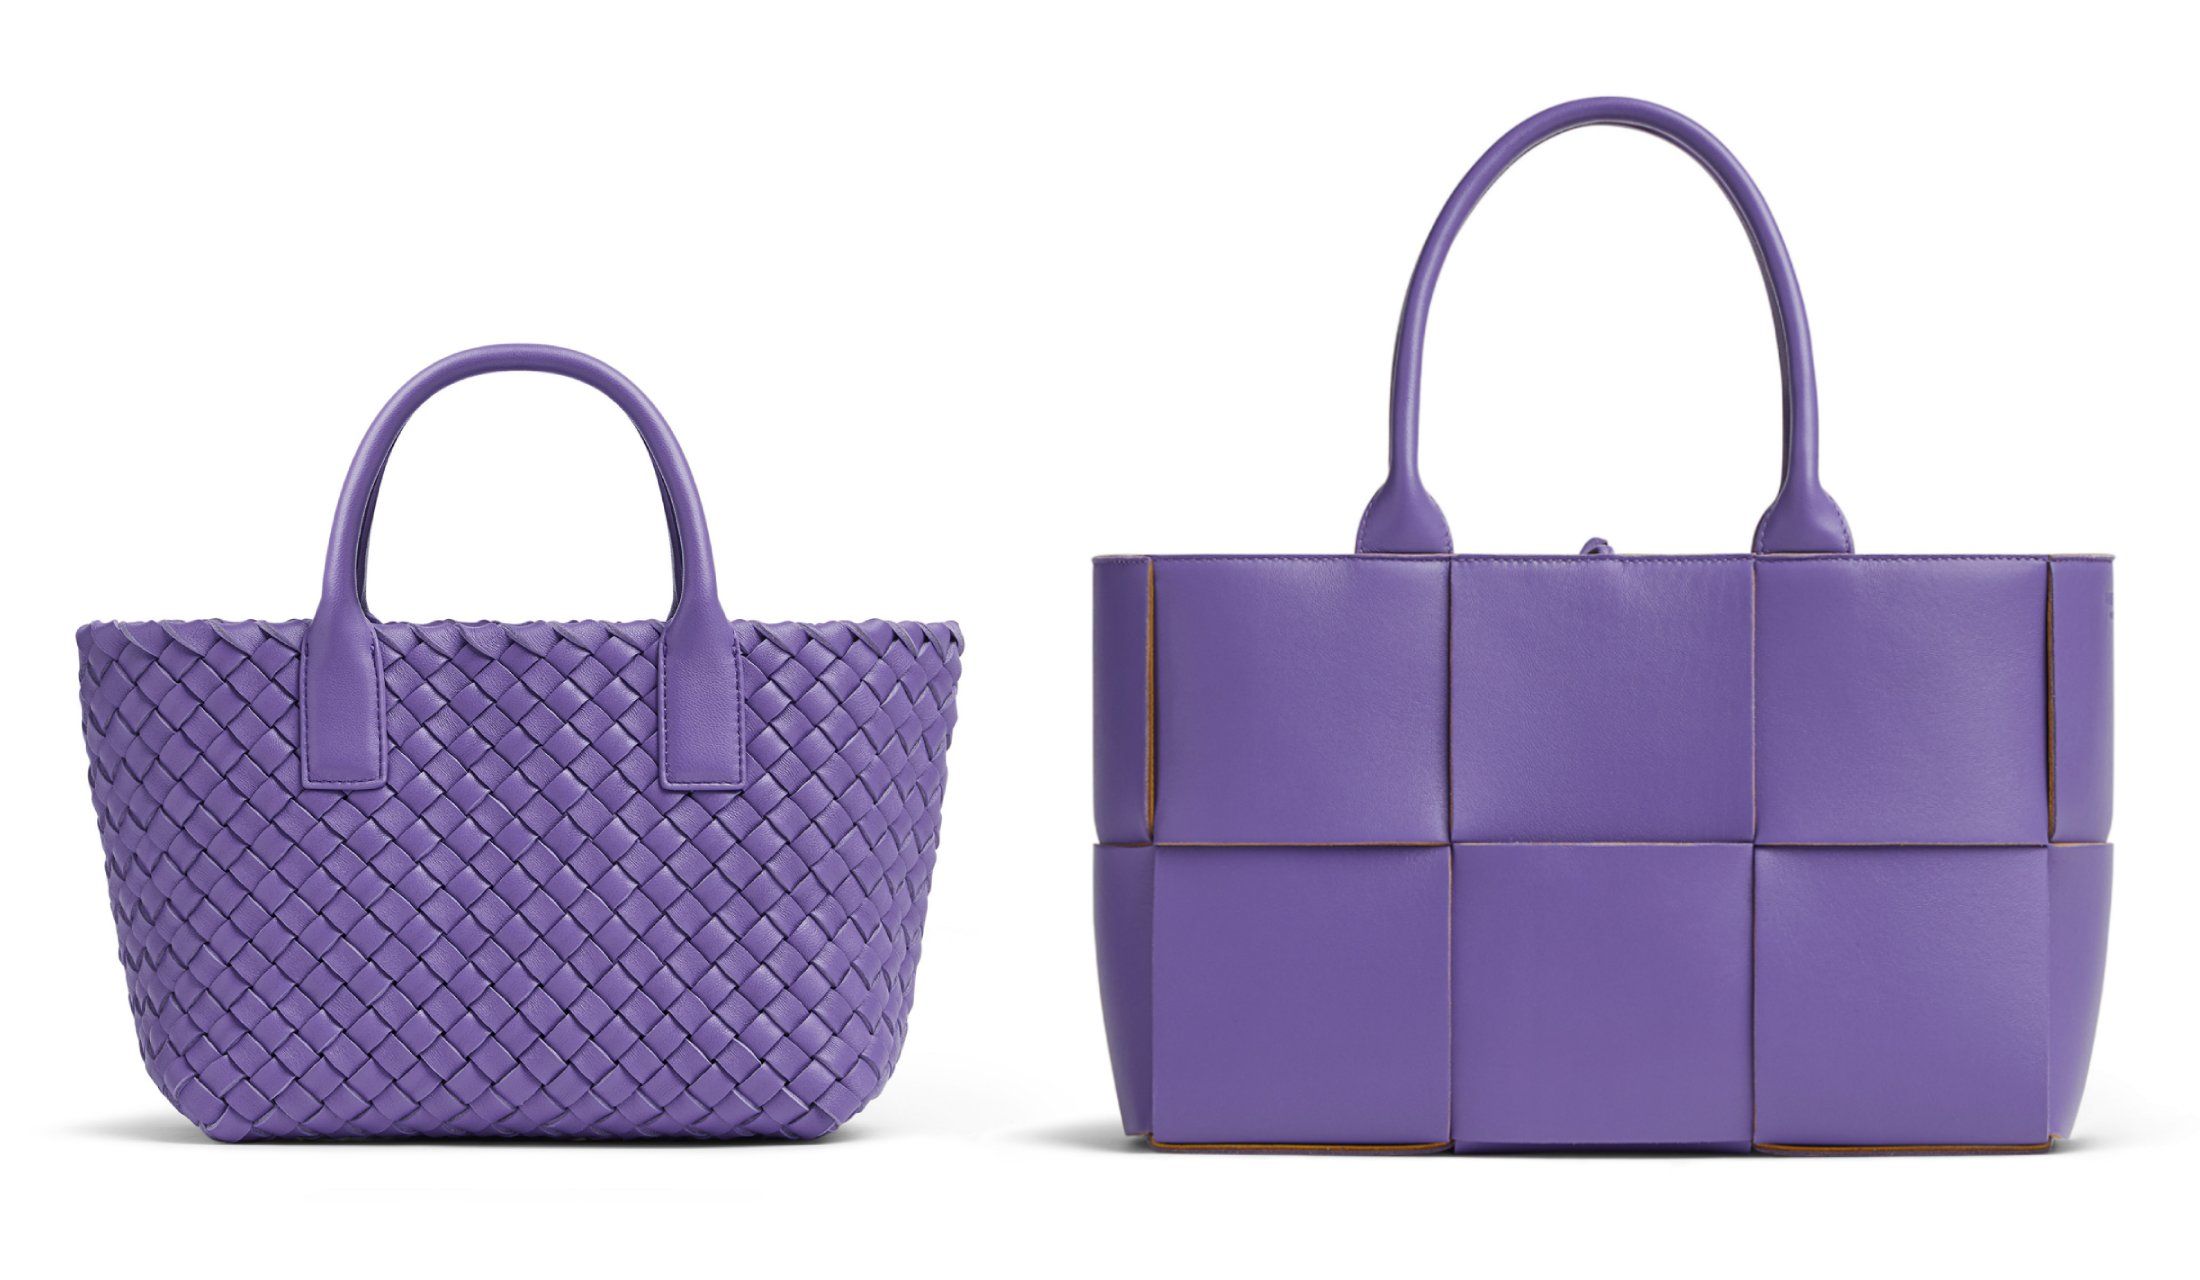 ボッテガ・ヴェネタの人気バッグに美しい新カラーが仲間入り 